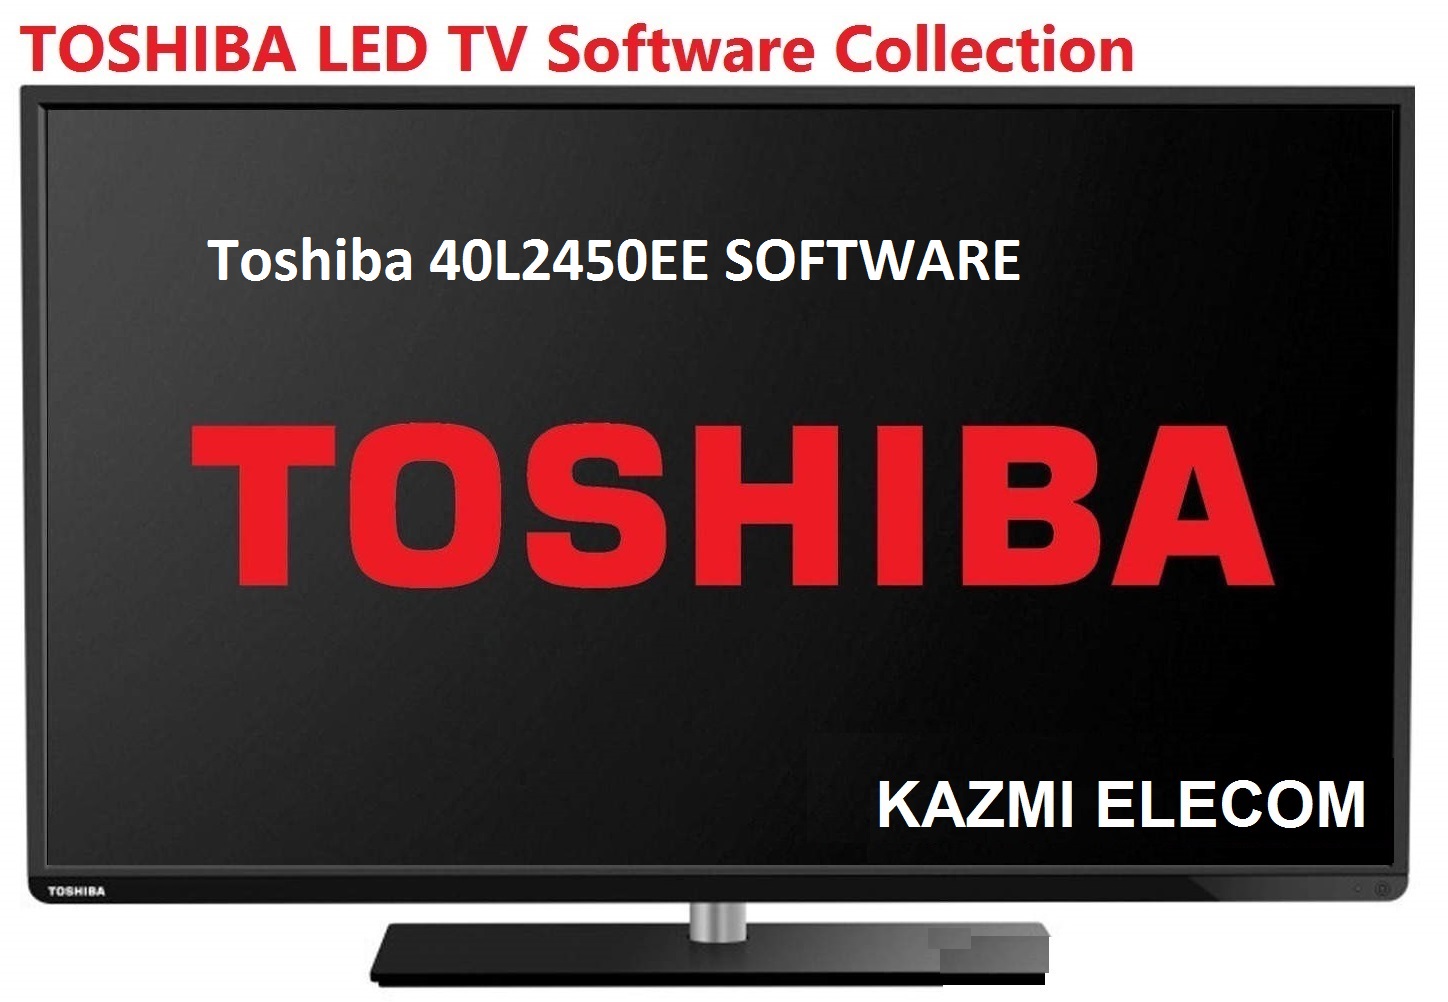 Toshiba 40L2450Ee